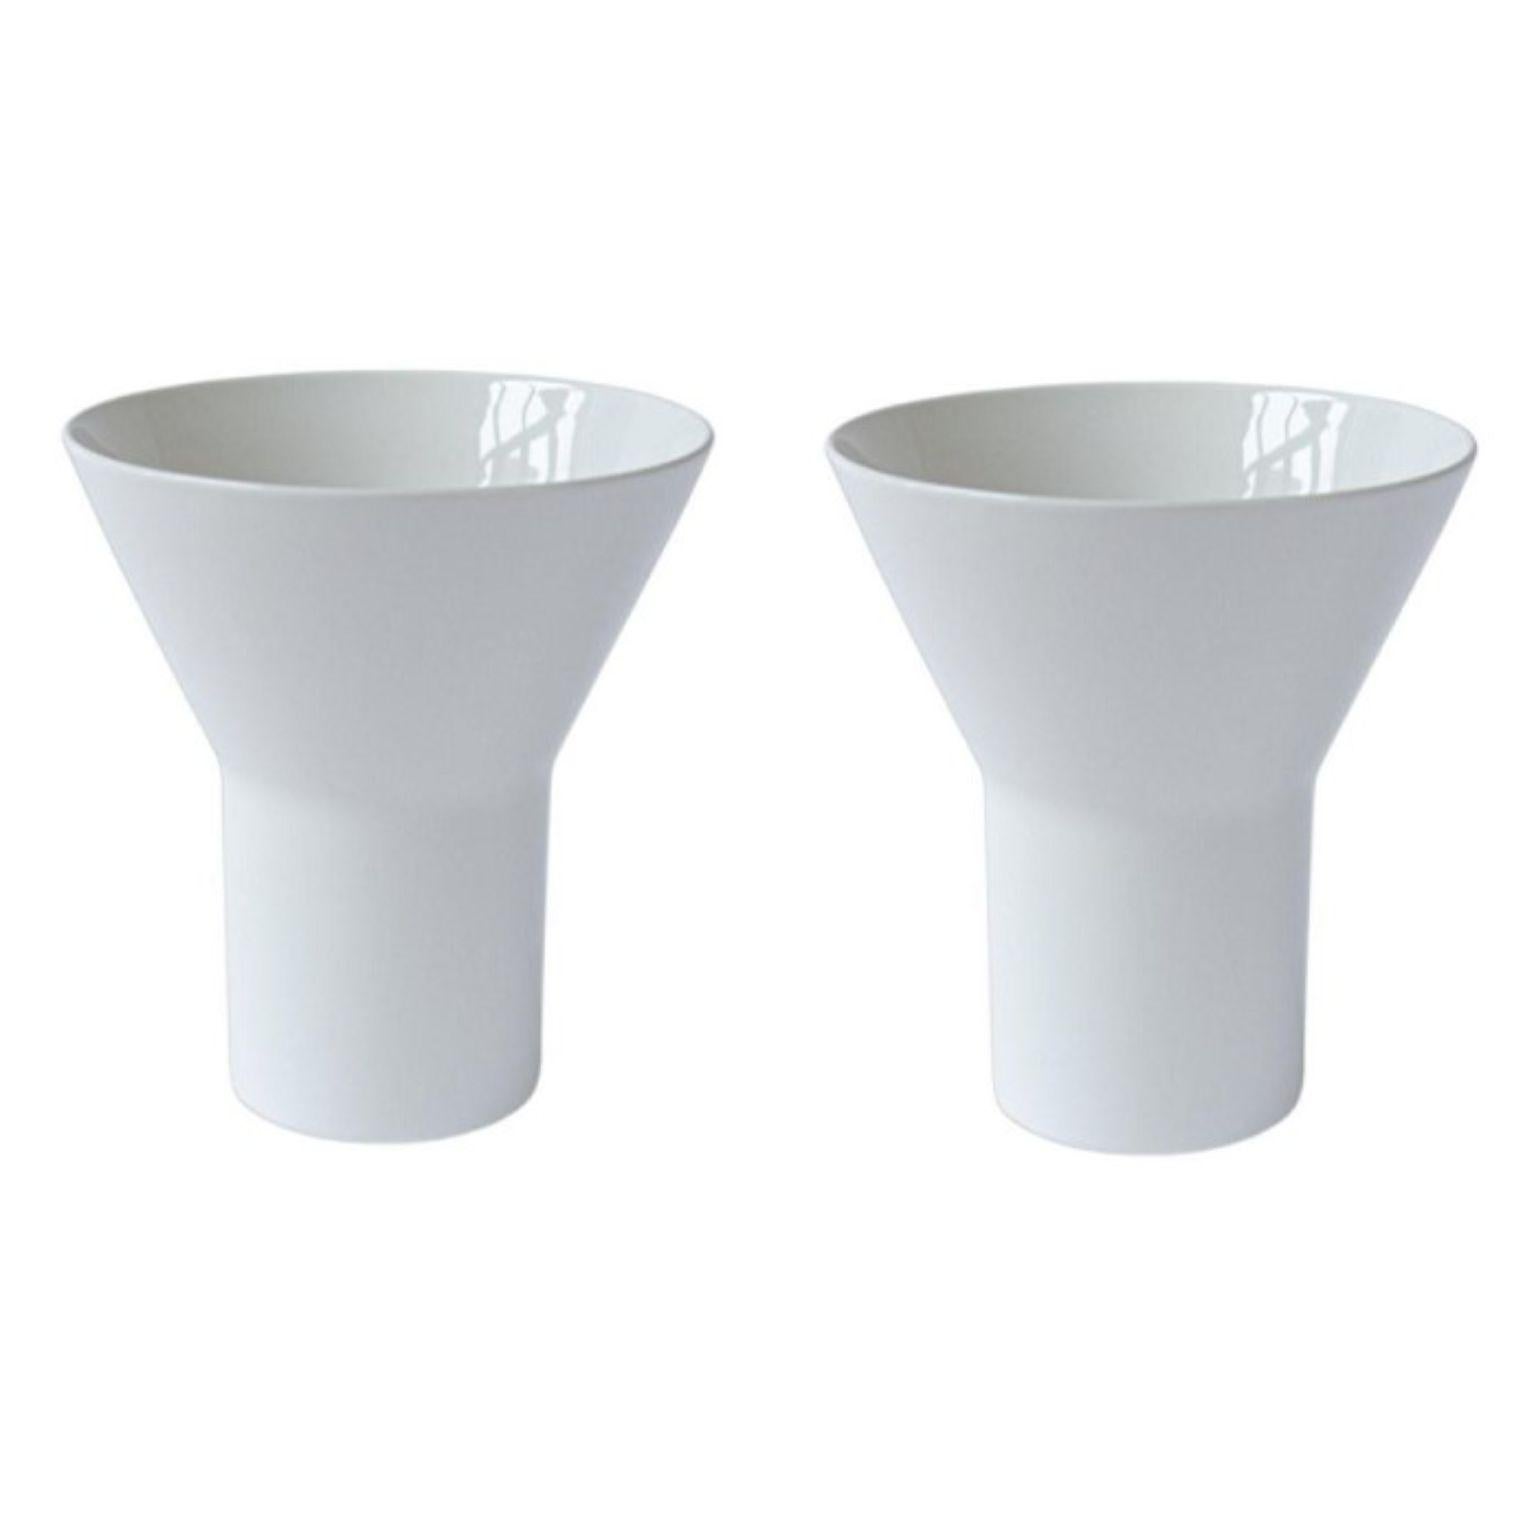 2er-Set mittelgroße weiße KYO-Vasen aus Keramik von Mazo Design
Abmessungen: D 19,5 x H 21,5 cm
MATERIAL: glasierte Keramik.

Die neue Kollektion von mazo ist sowohl funktional als auch skulptural und gleichzeitig sehr skandinavisch und japanisch.